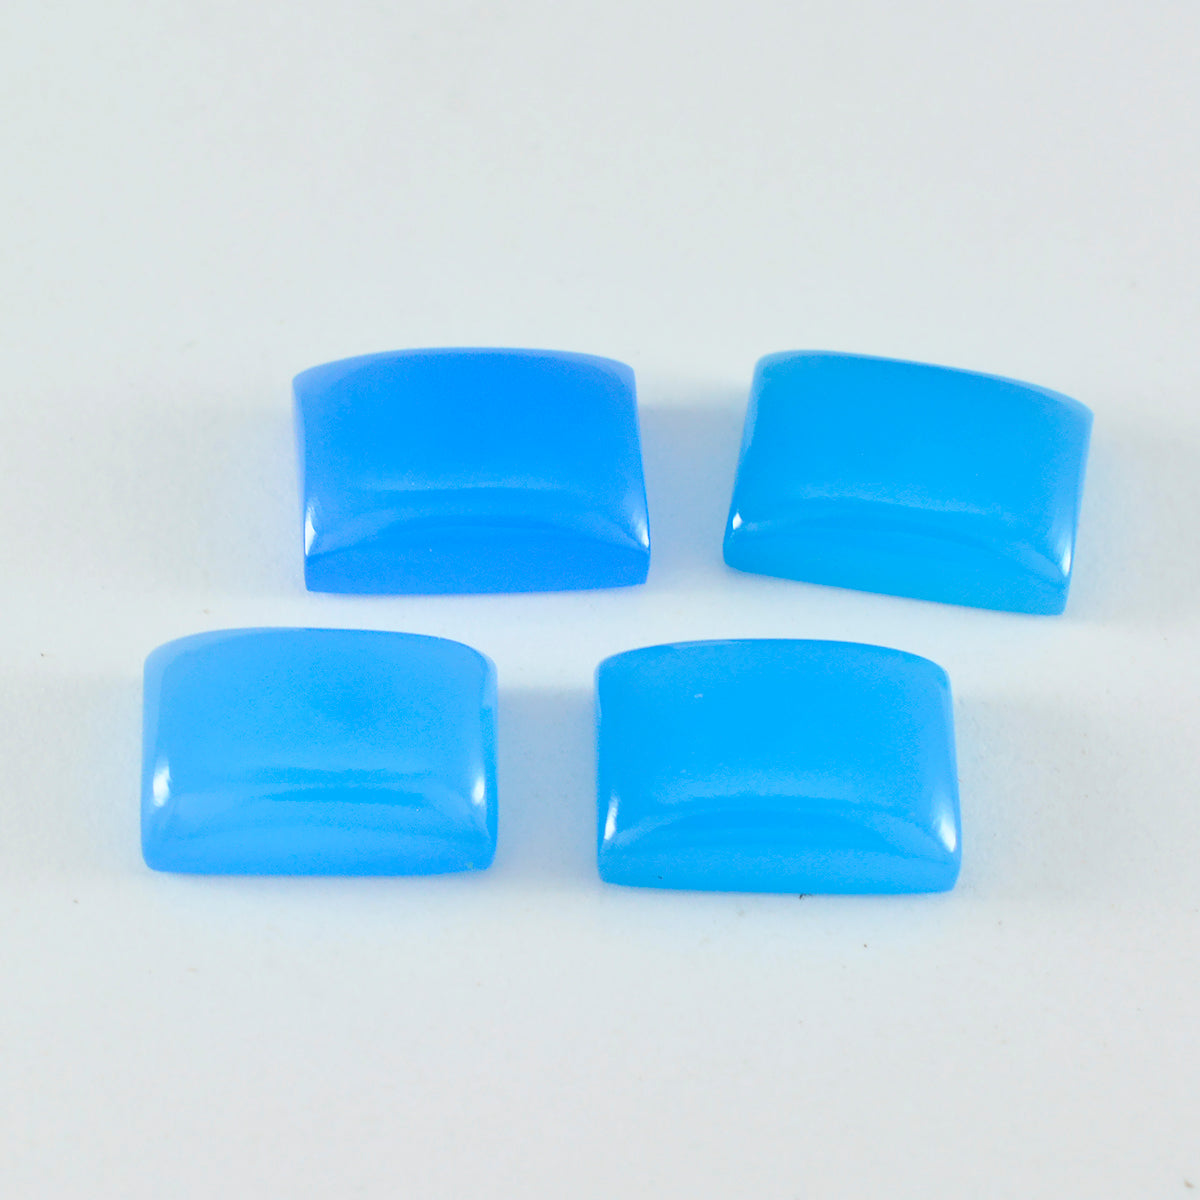 riyogems 1 шт. синий халцедон кабошон 10x12 мм восьмиугольной формы красивые качественные драгоценные камни